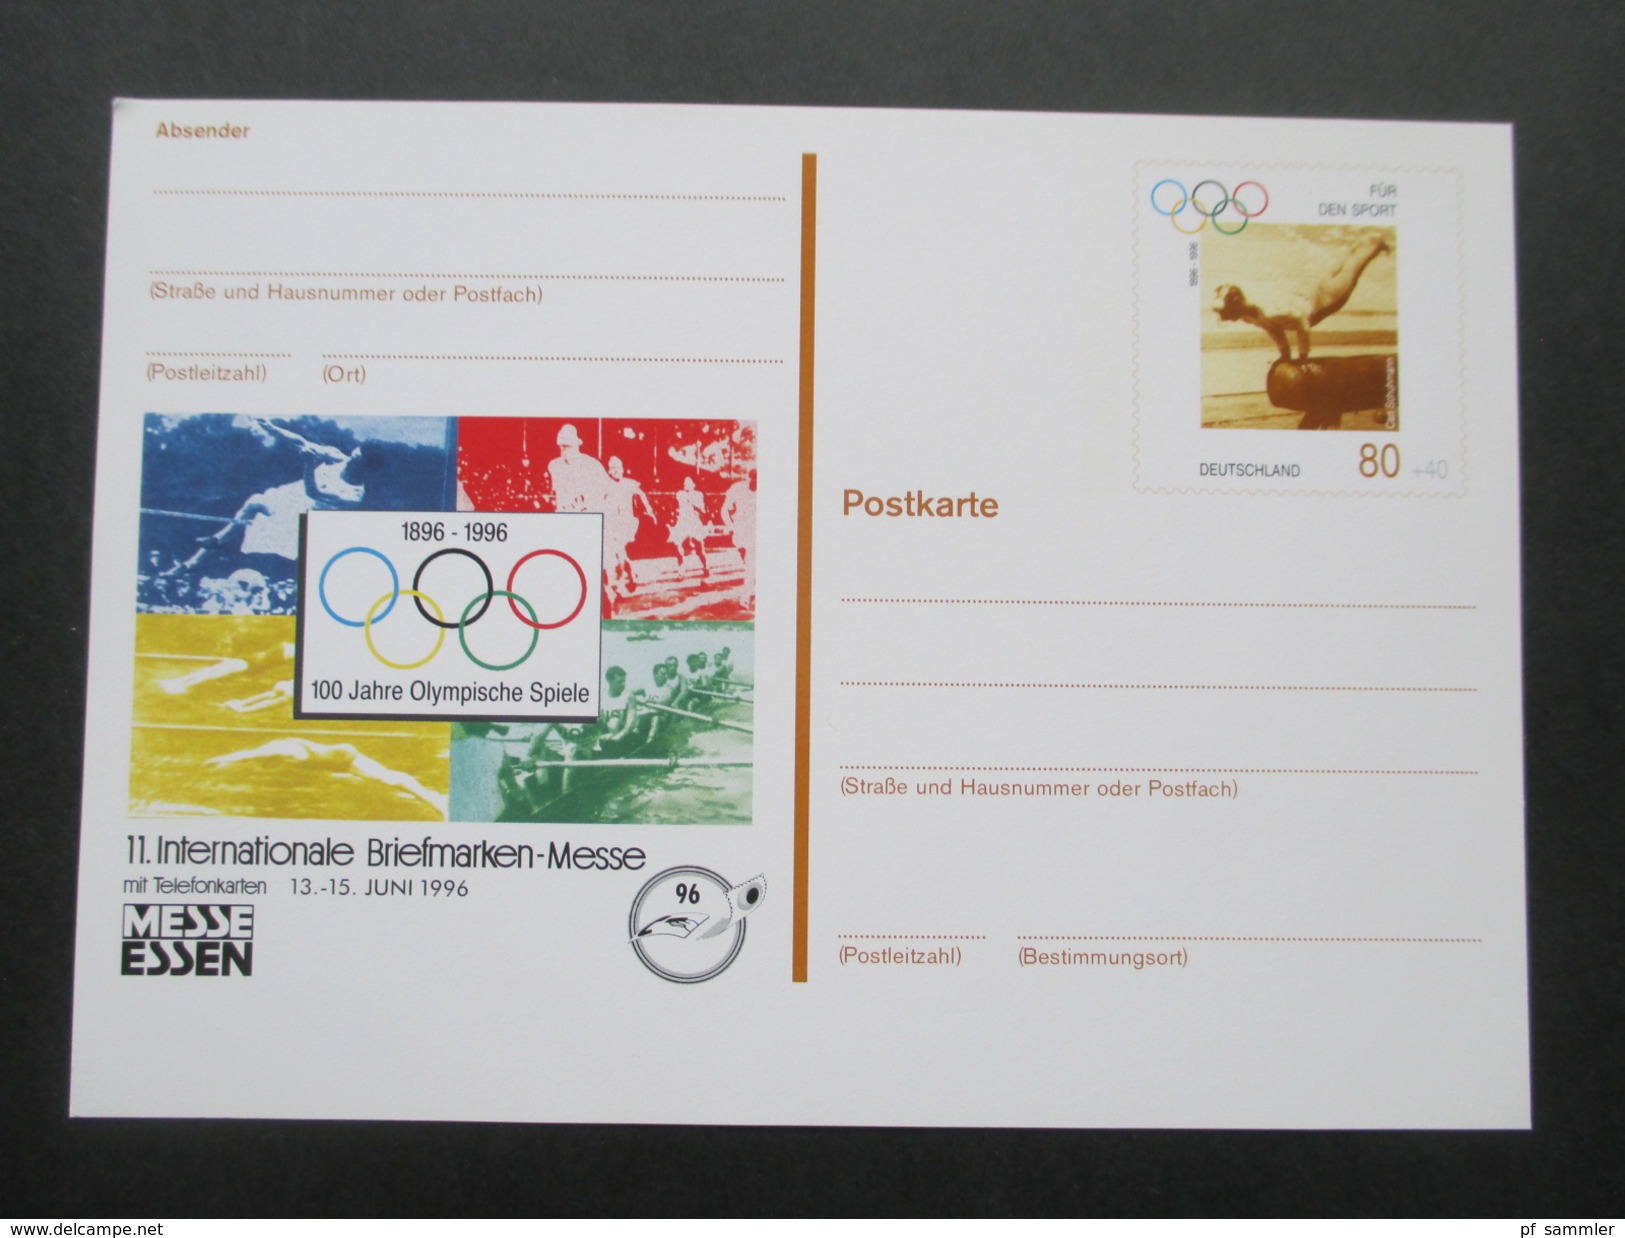 BRD Ganzsachen 1989 - 97 Sonderpostkarten! 45 Stück! Briefmarken Ausstellungen usw. ungebraucht / guter Zustand!